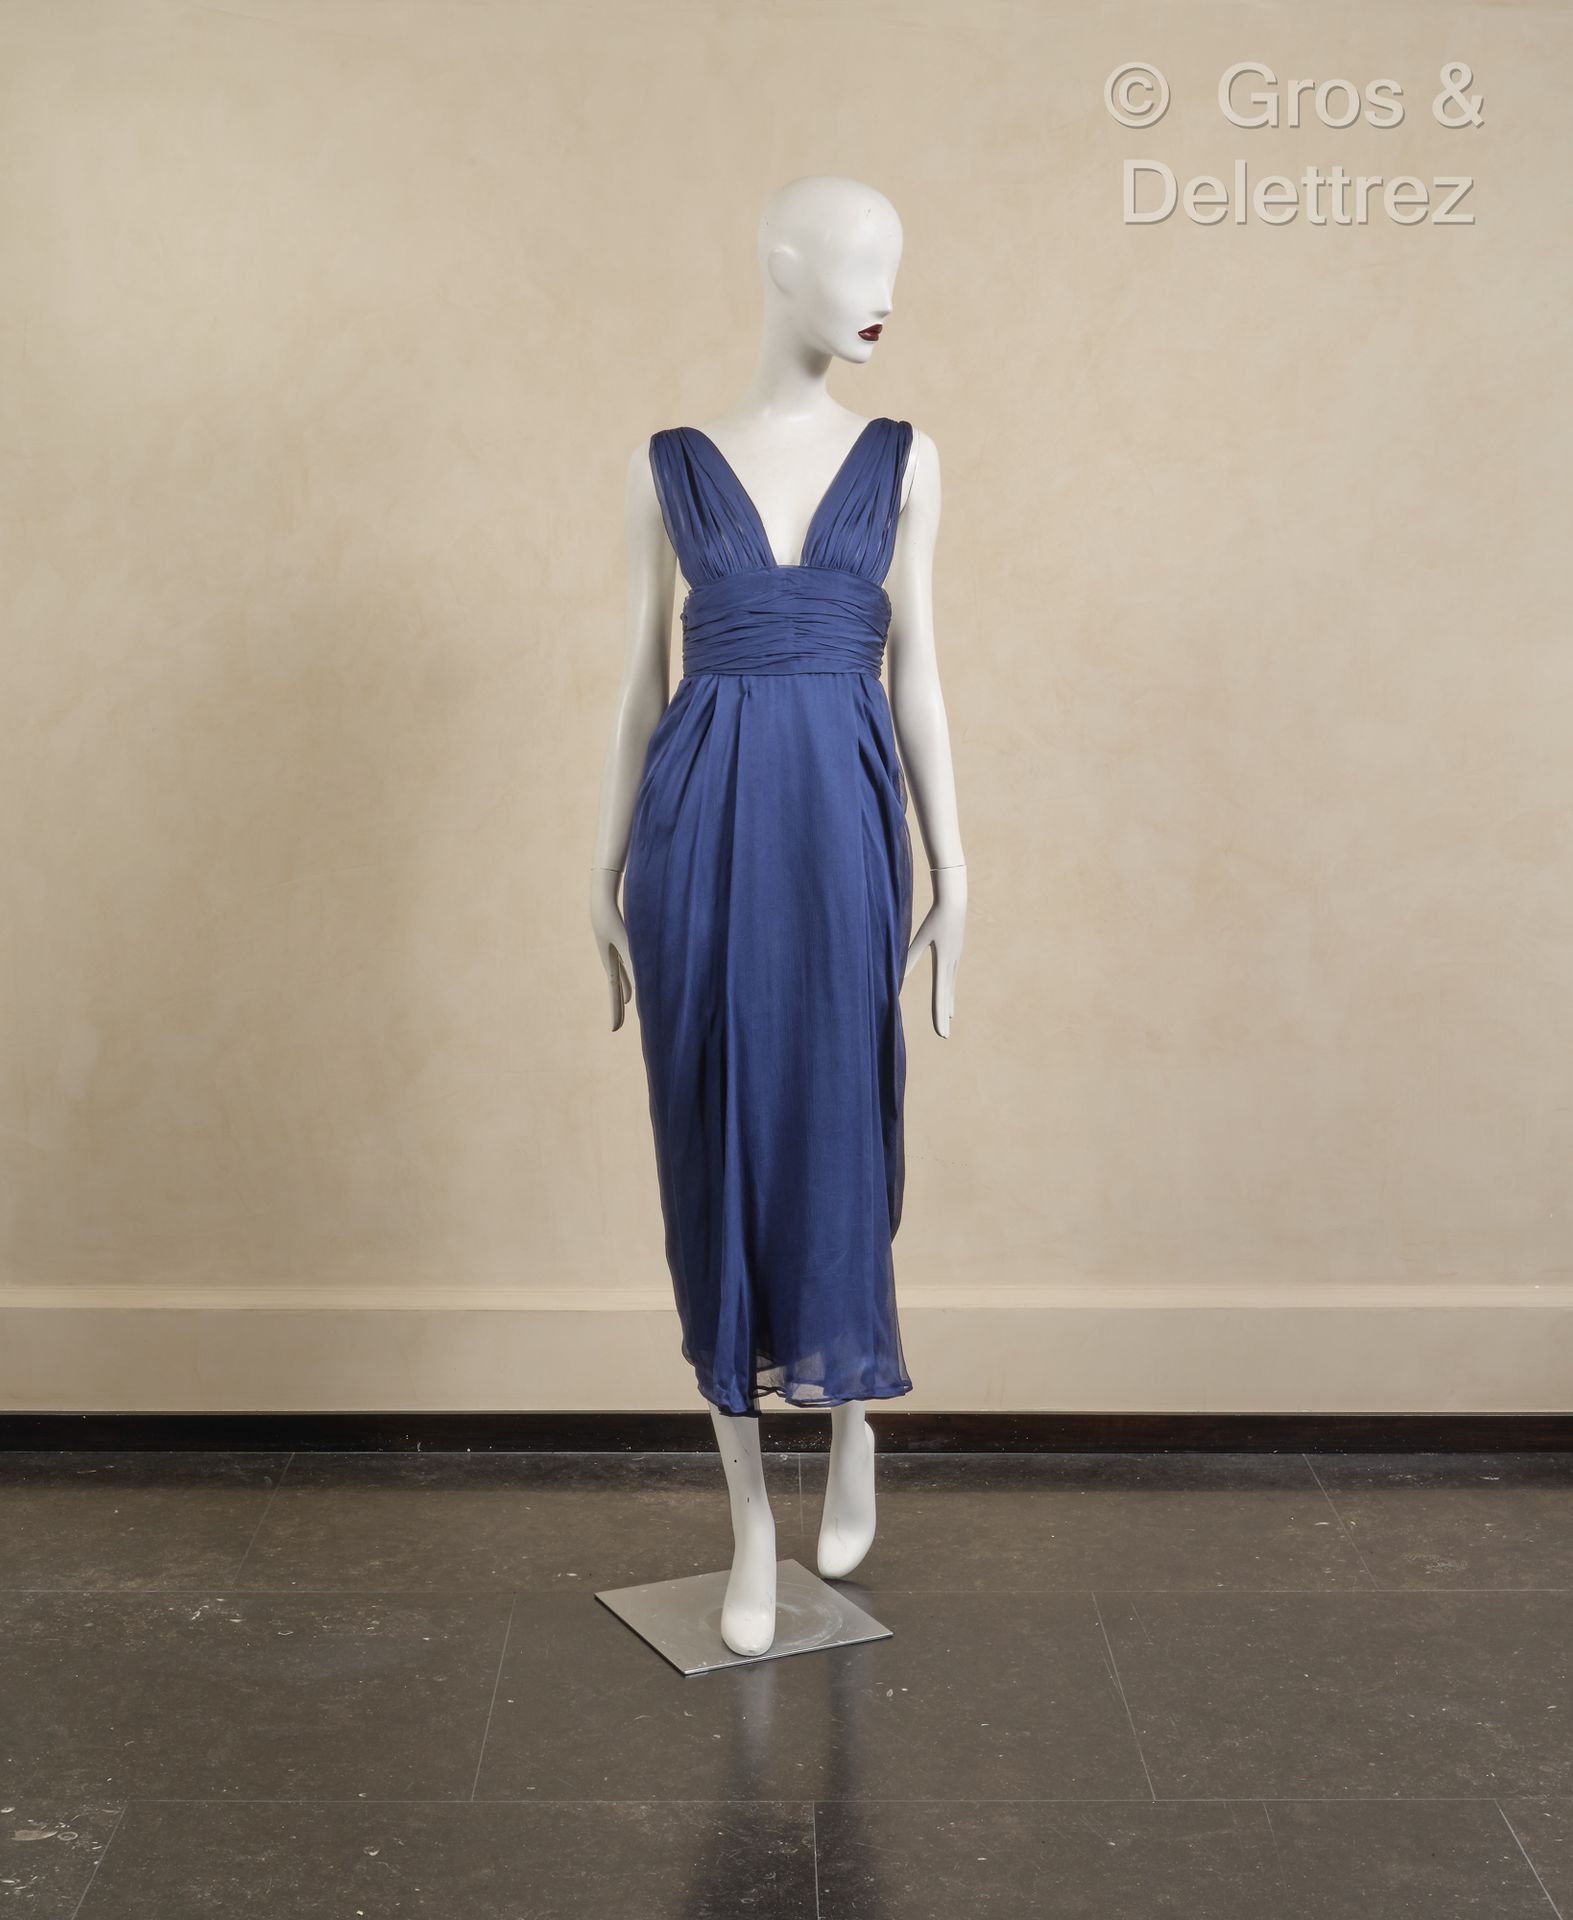 Null *GIVENCHY 高级定制时装 - 1989 春夏系列 n°77352 - 深蓝色真丝雪纺垂坠连衣裙，附披肩。黑色标签，白色图案。